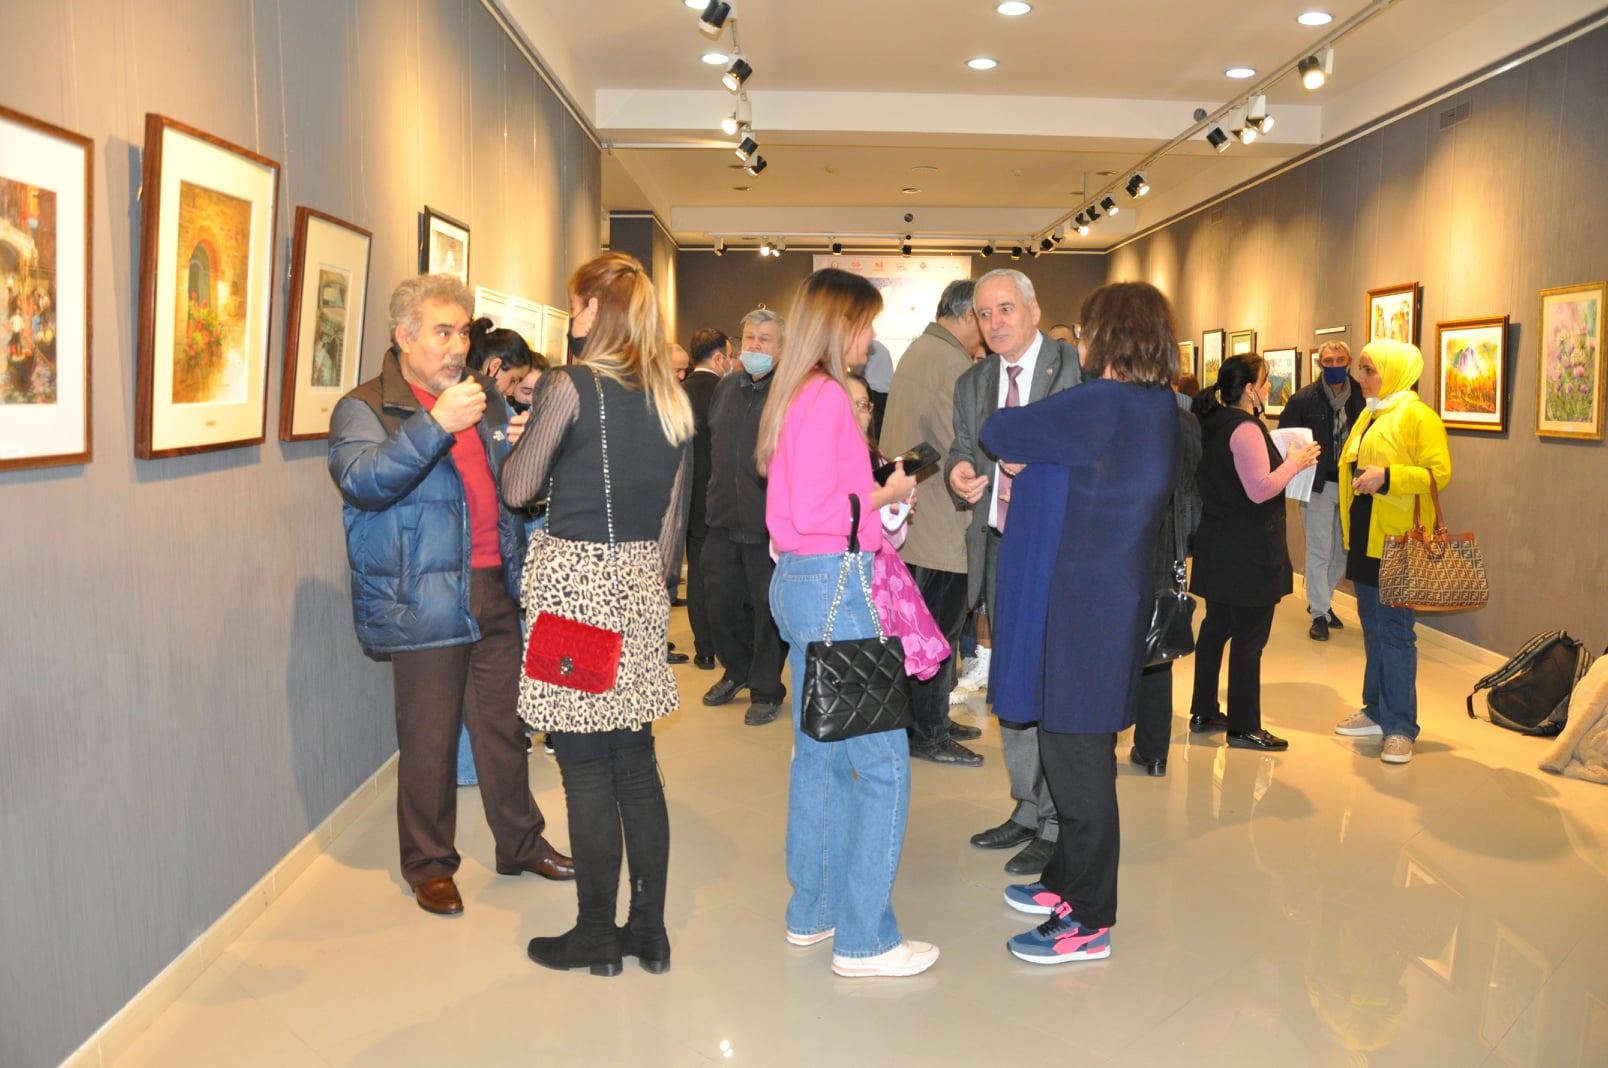 Акварельные впечатления в Баку - юбилей IWS Globe International Watercolor Society (ФОТО)